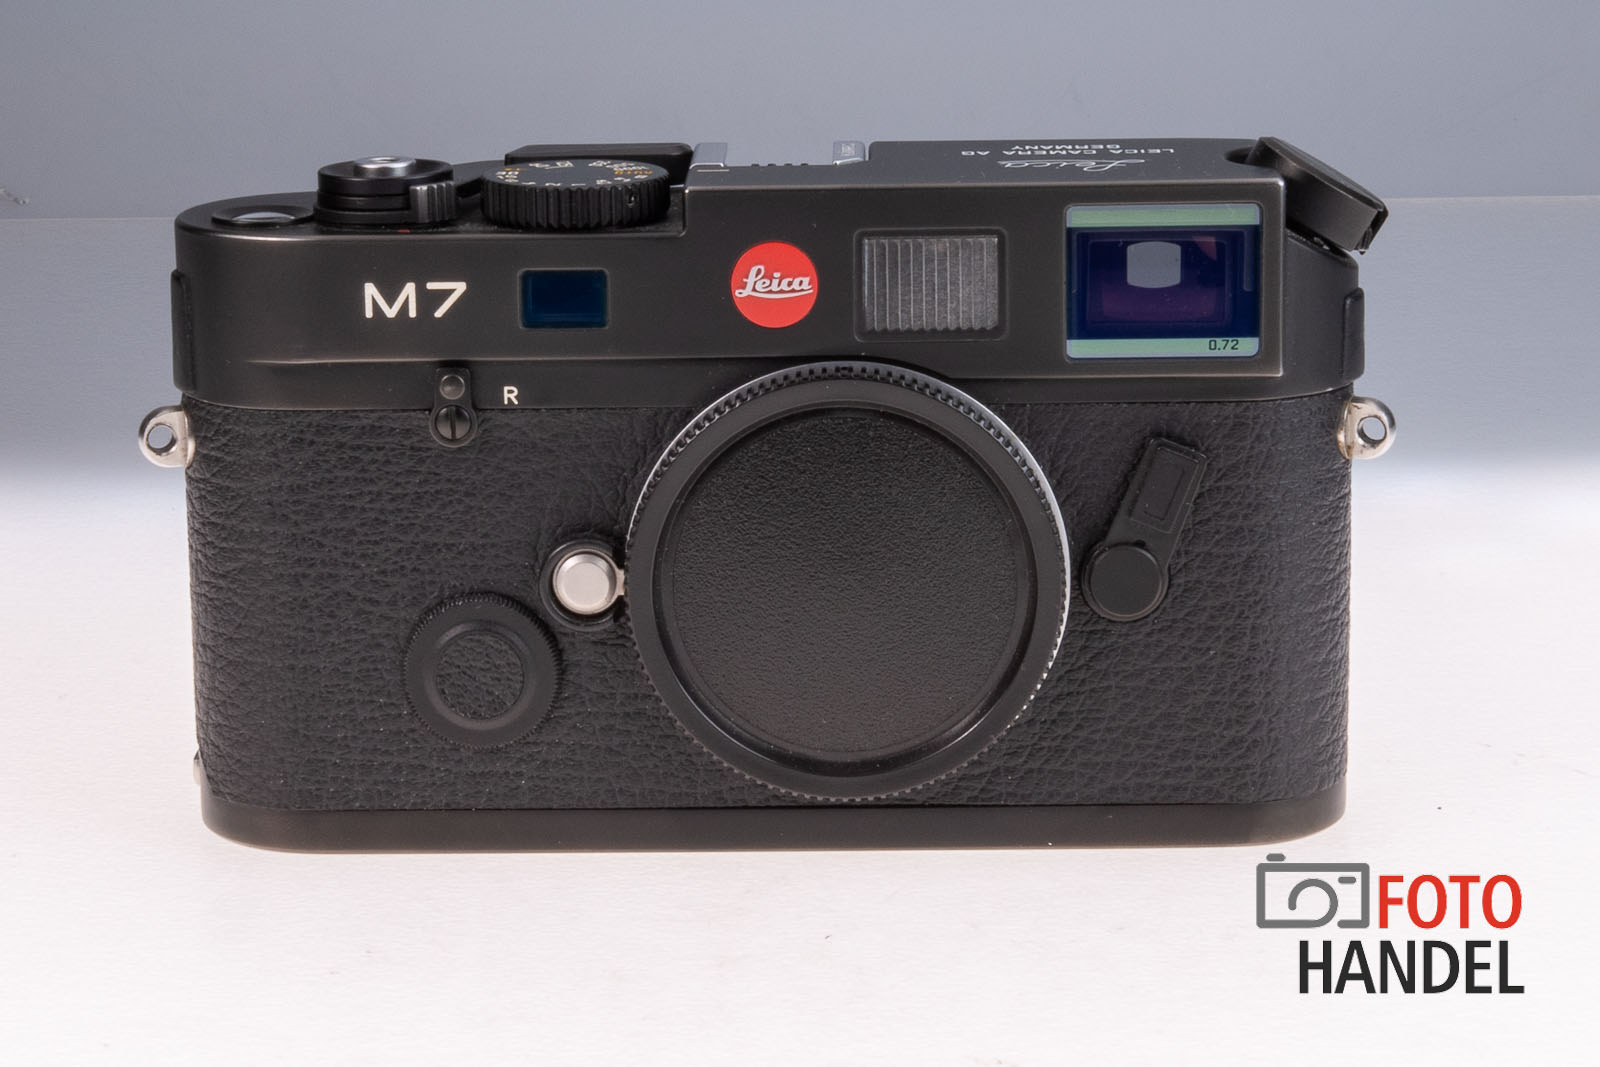 Leica M7 schwarz 0.72 MP-Sucher - 10503